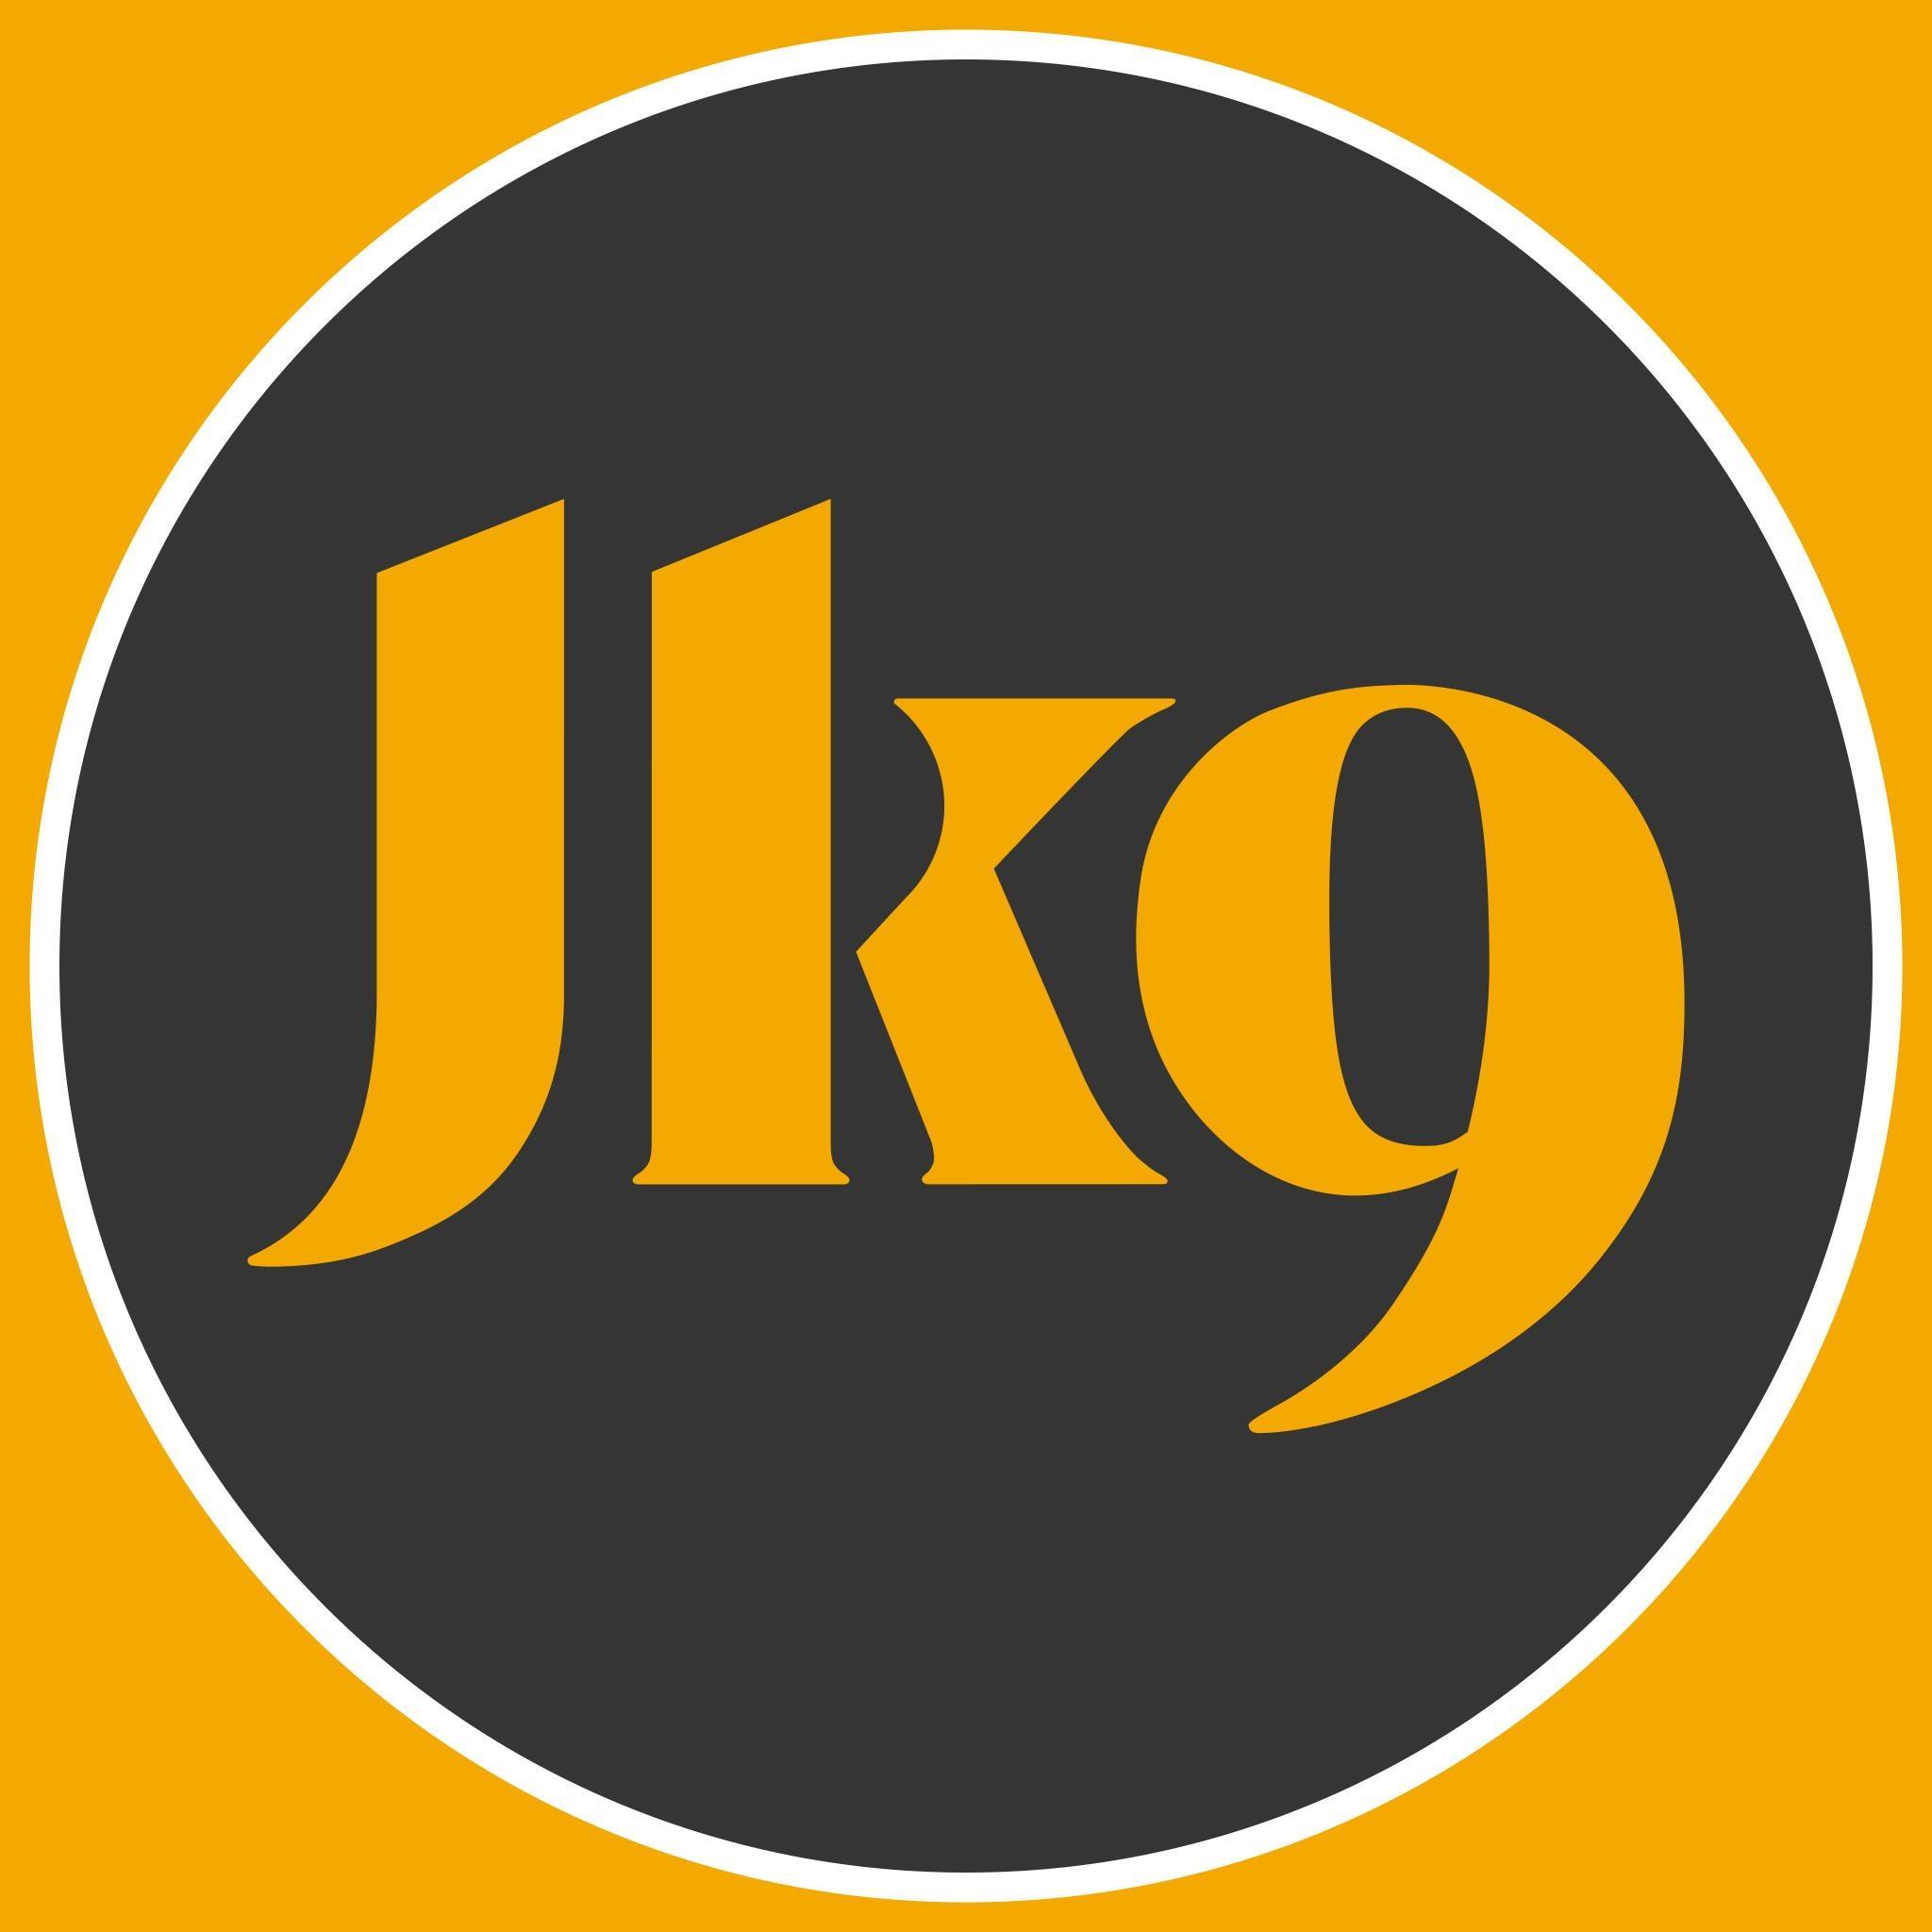 Company logo of Julius-K9® USA